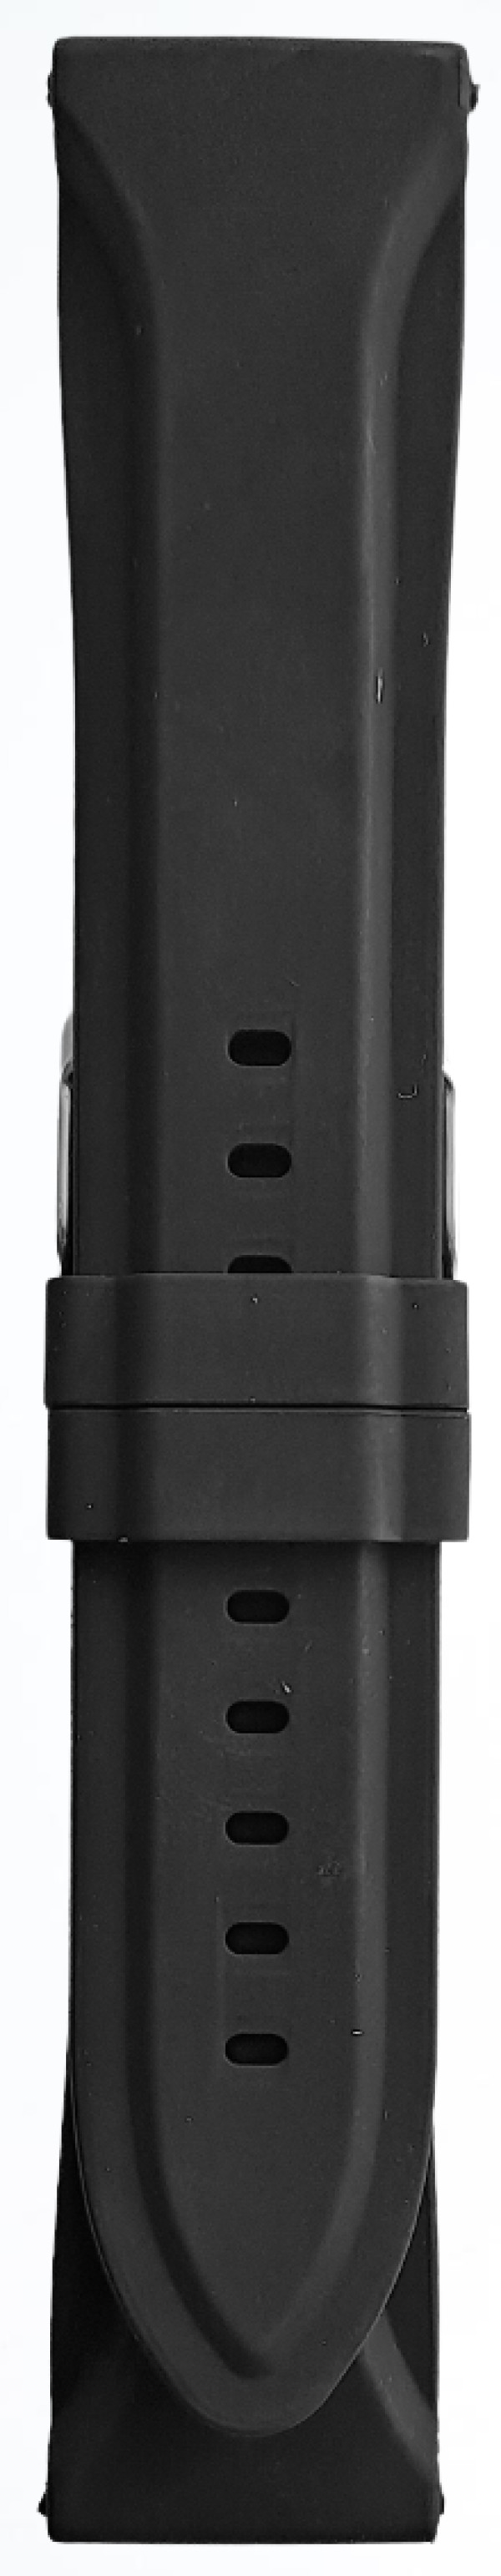 Silikonski kaiš - SK 20.46 Crna boja 20mm